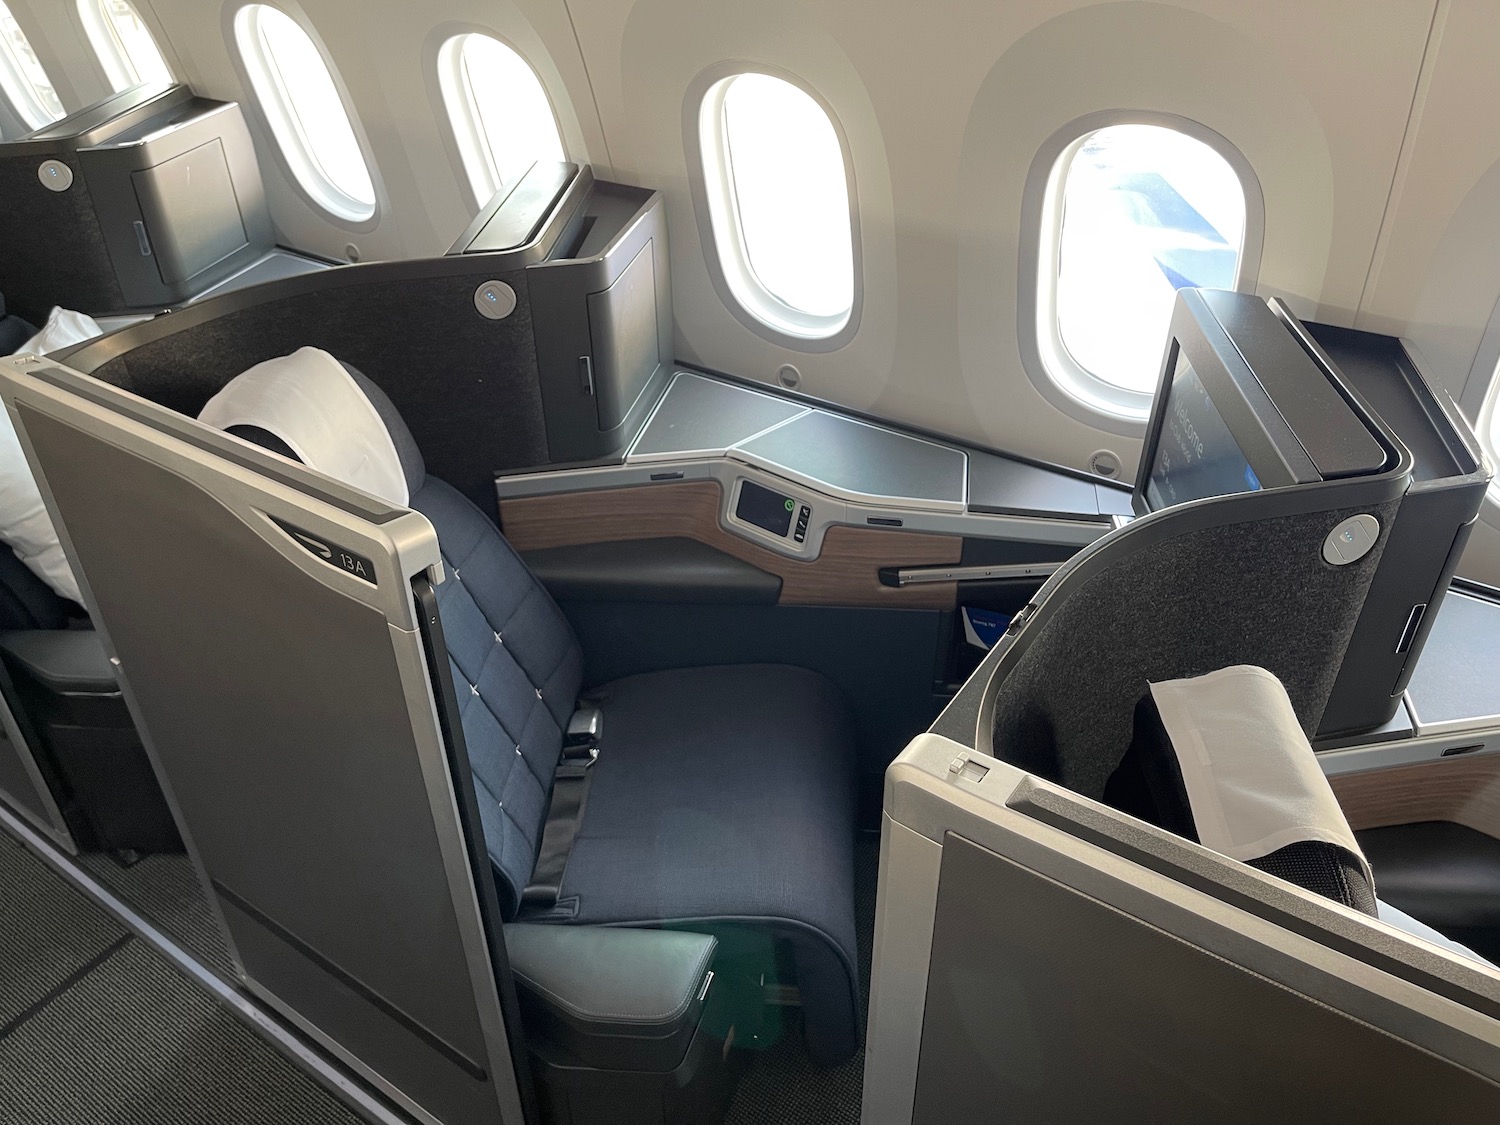 British Airways 787 10 Club World Suites 7 - Travel News, Insights & Resources.